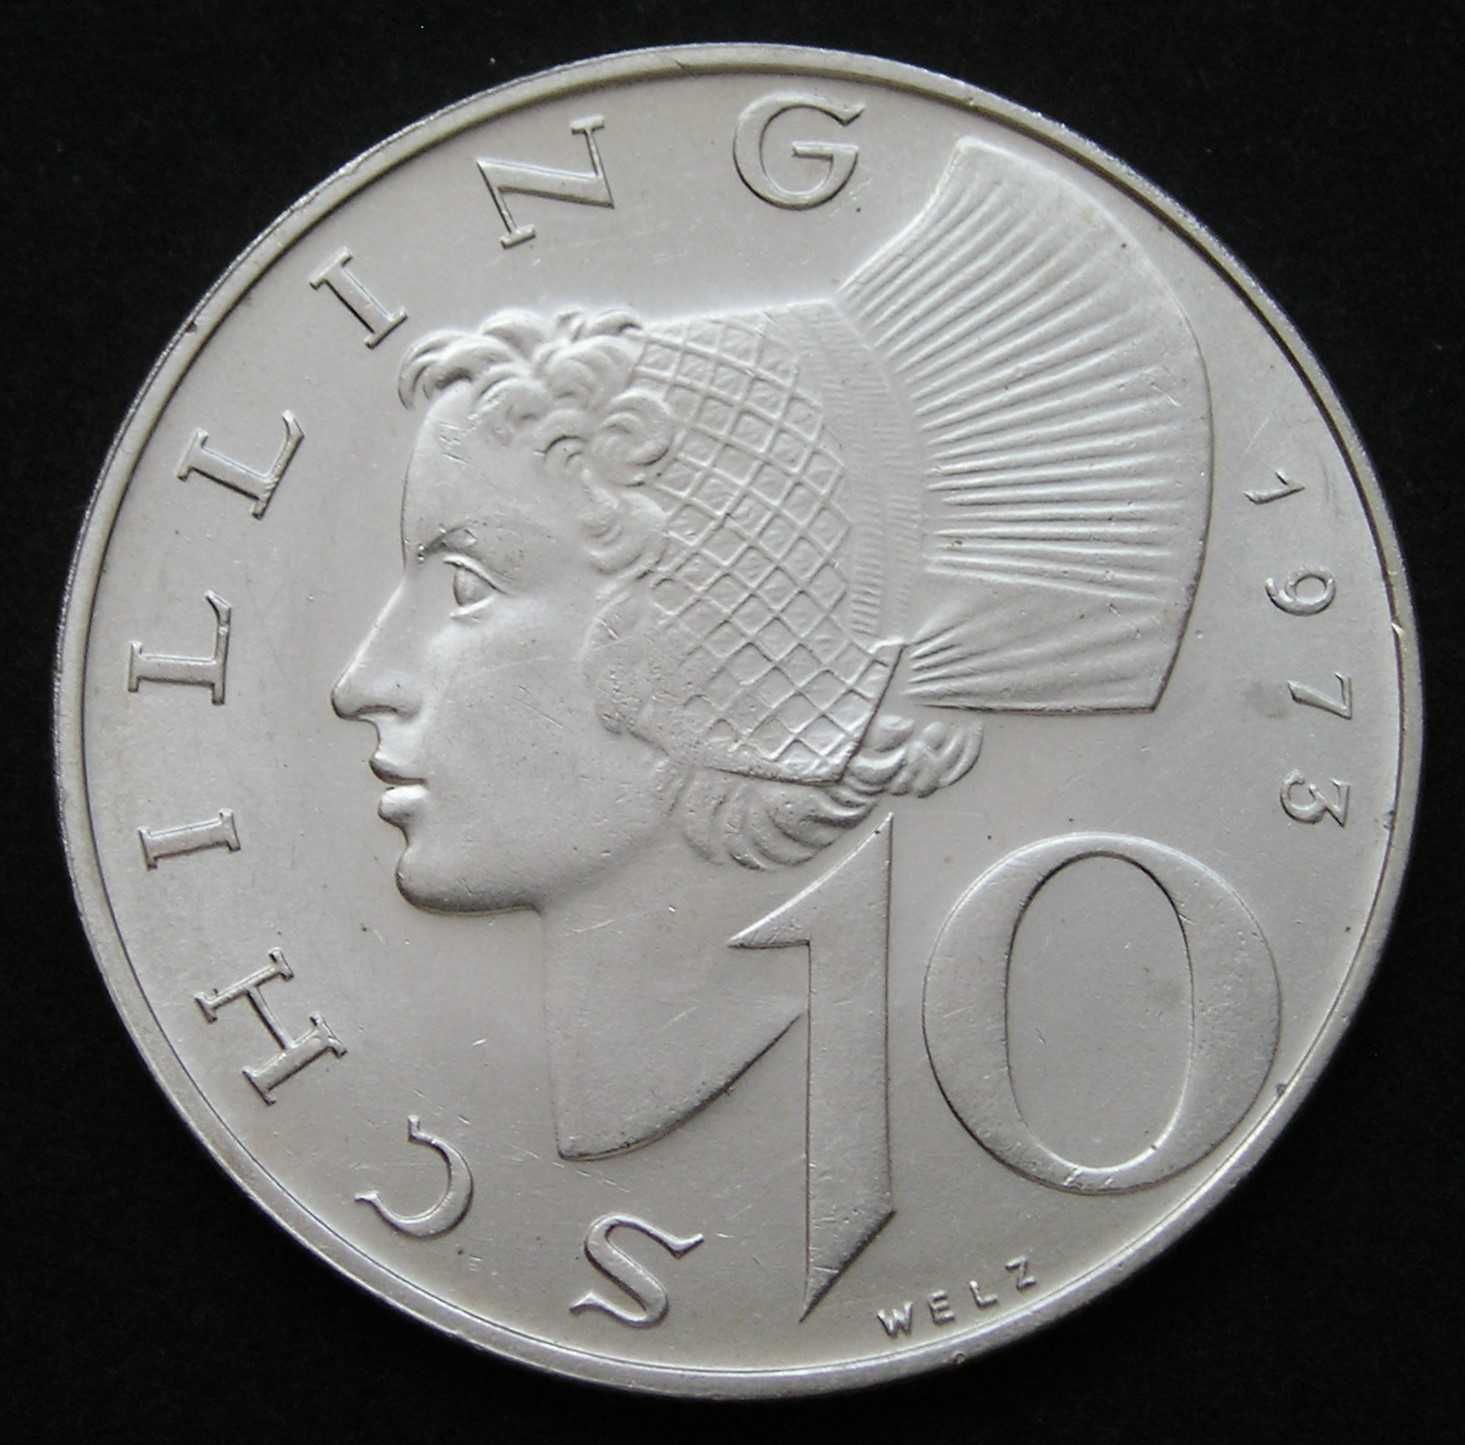 Austria 10 schilling 1973 - kobieta w czepku - srebro